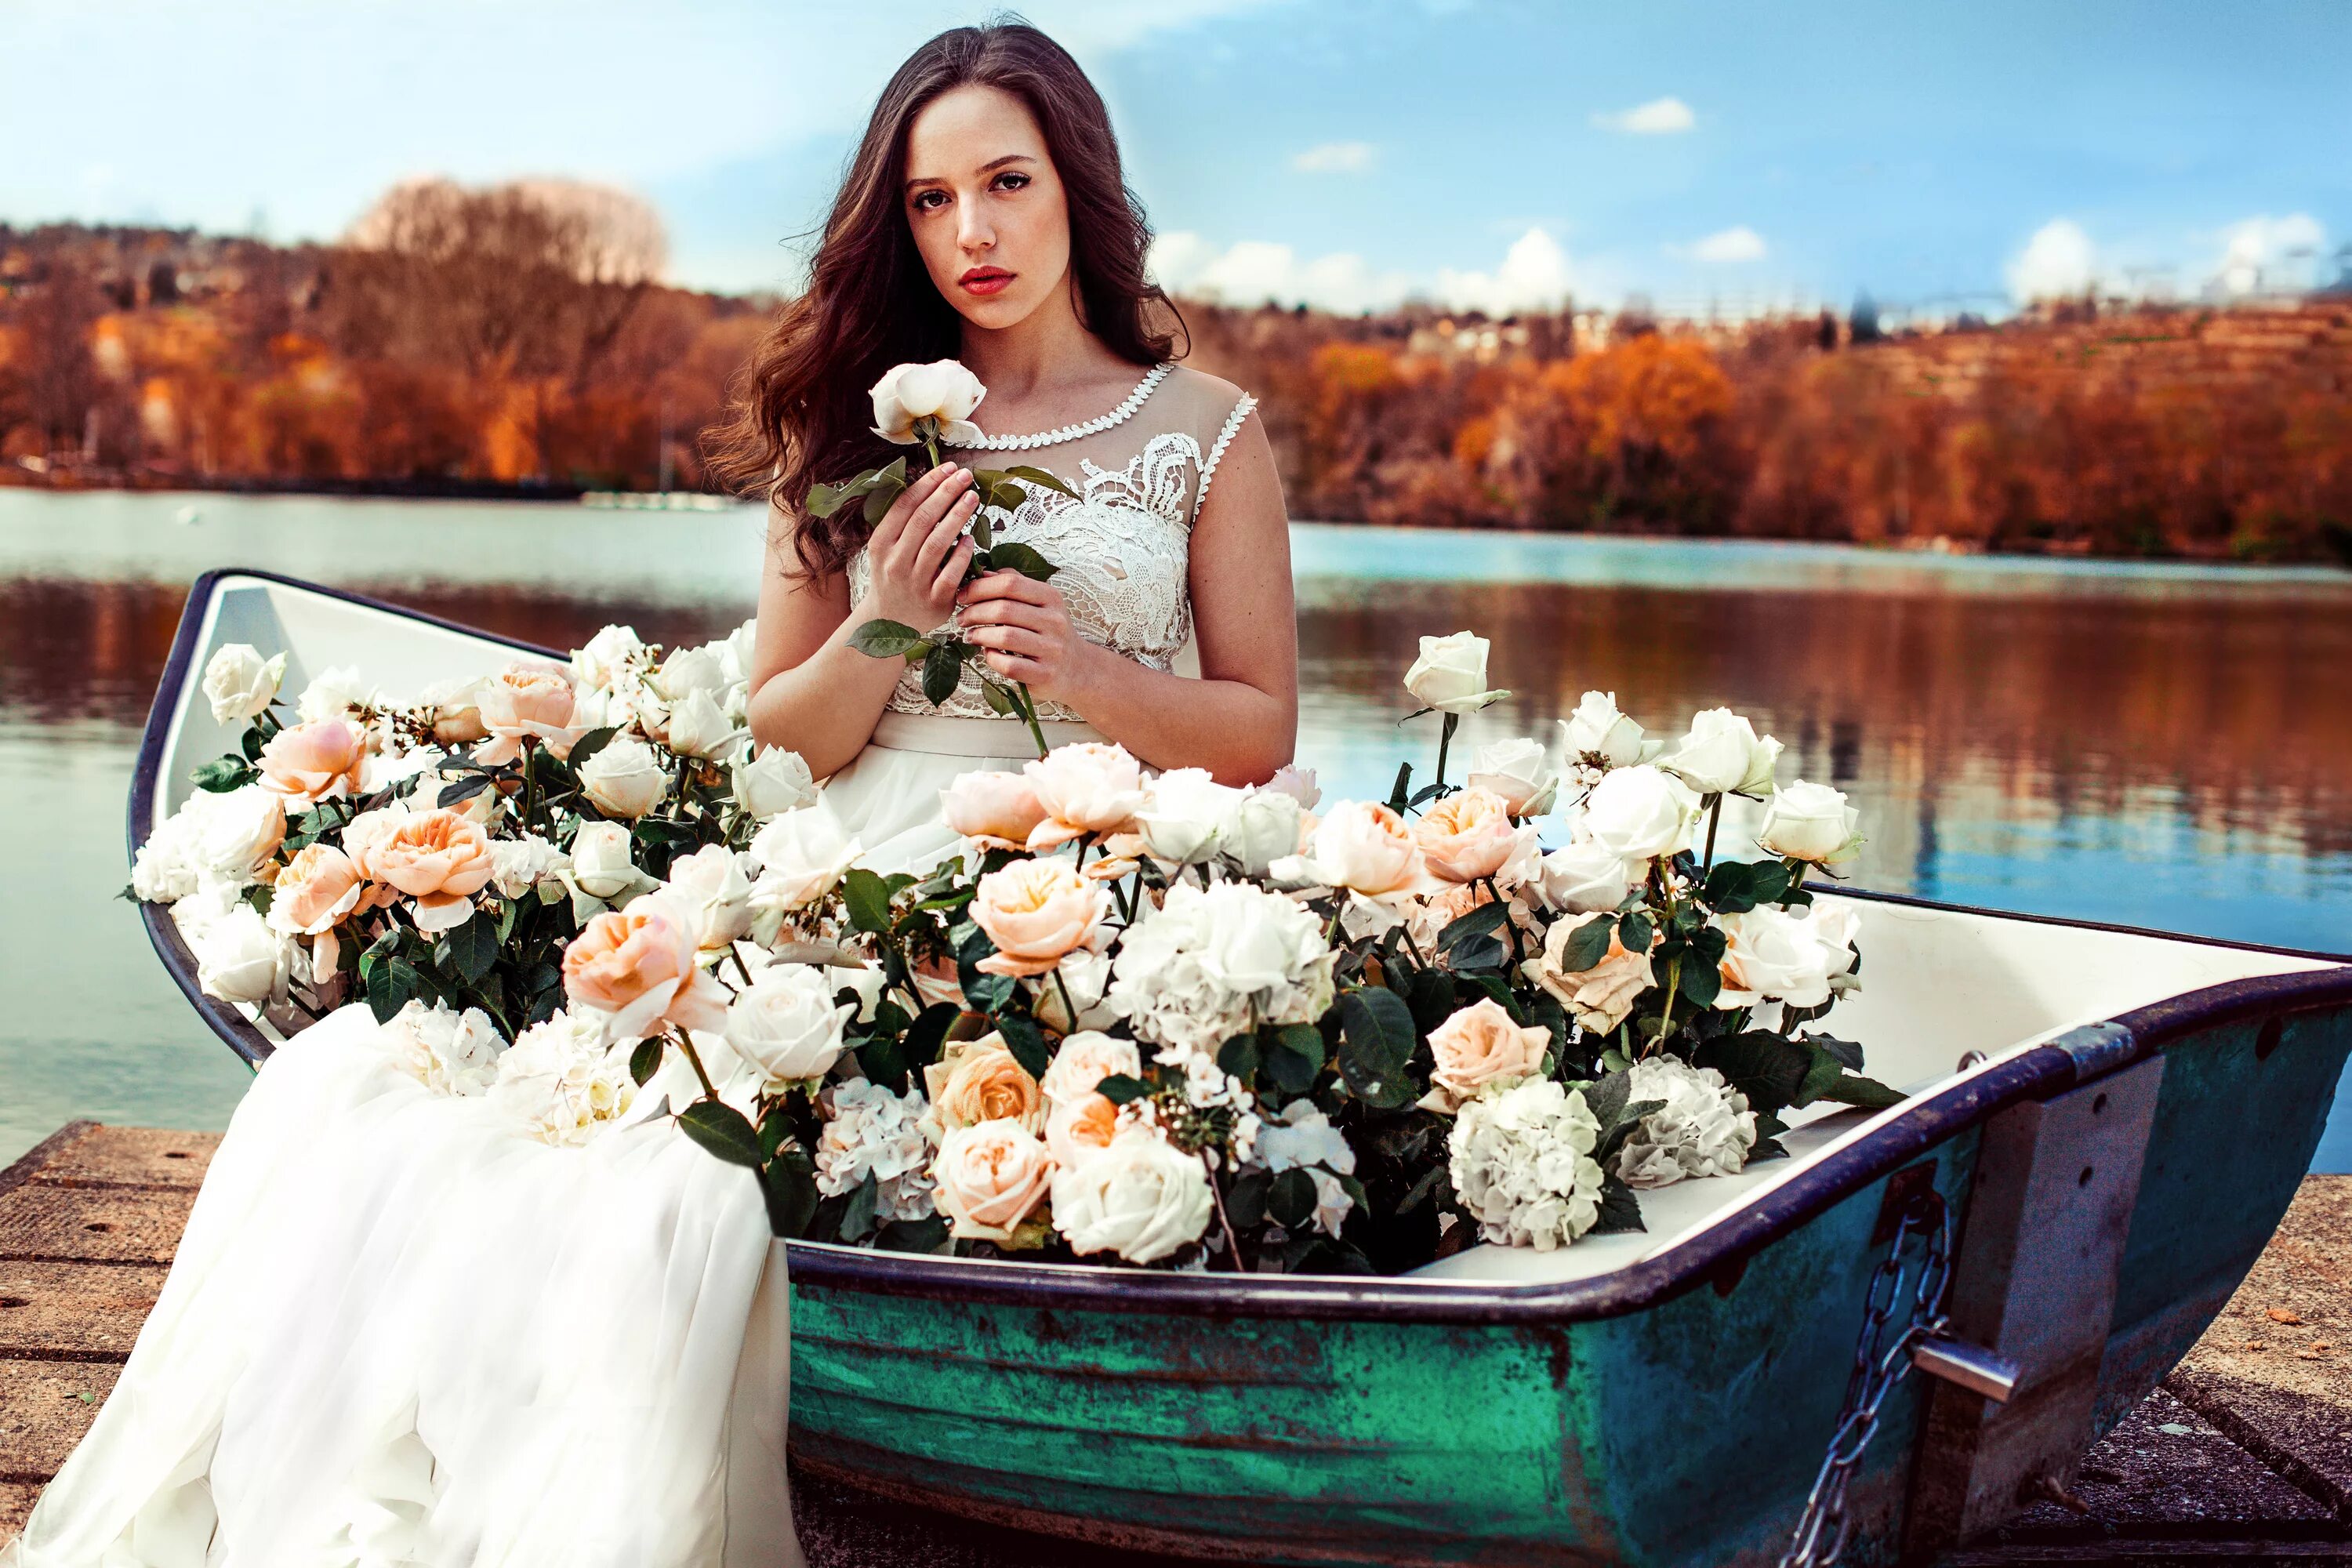 Цветы для женщины это. Девушка в лодке. Букет цветов для девушки. Фотосессия в лодке. Девушка с цветами.